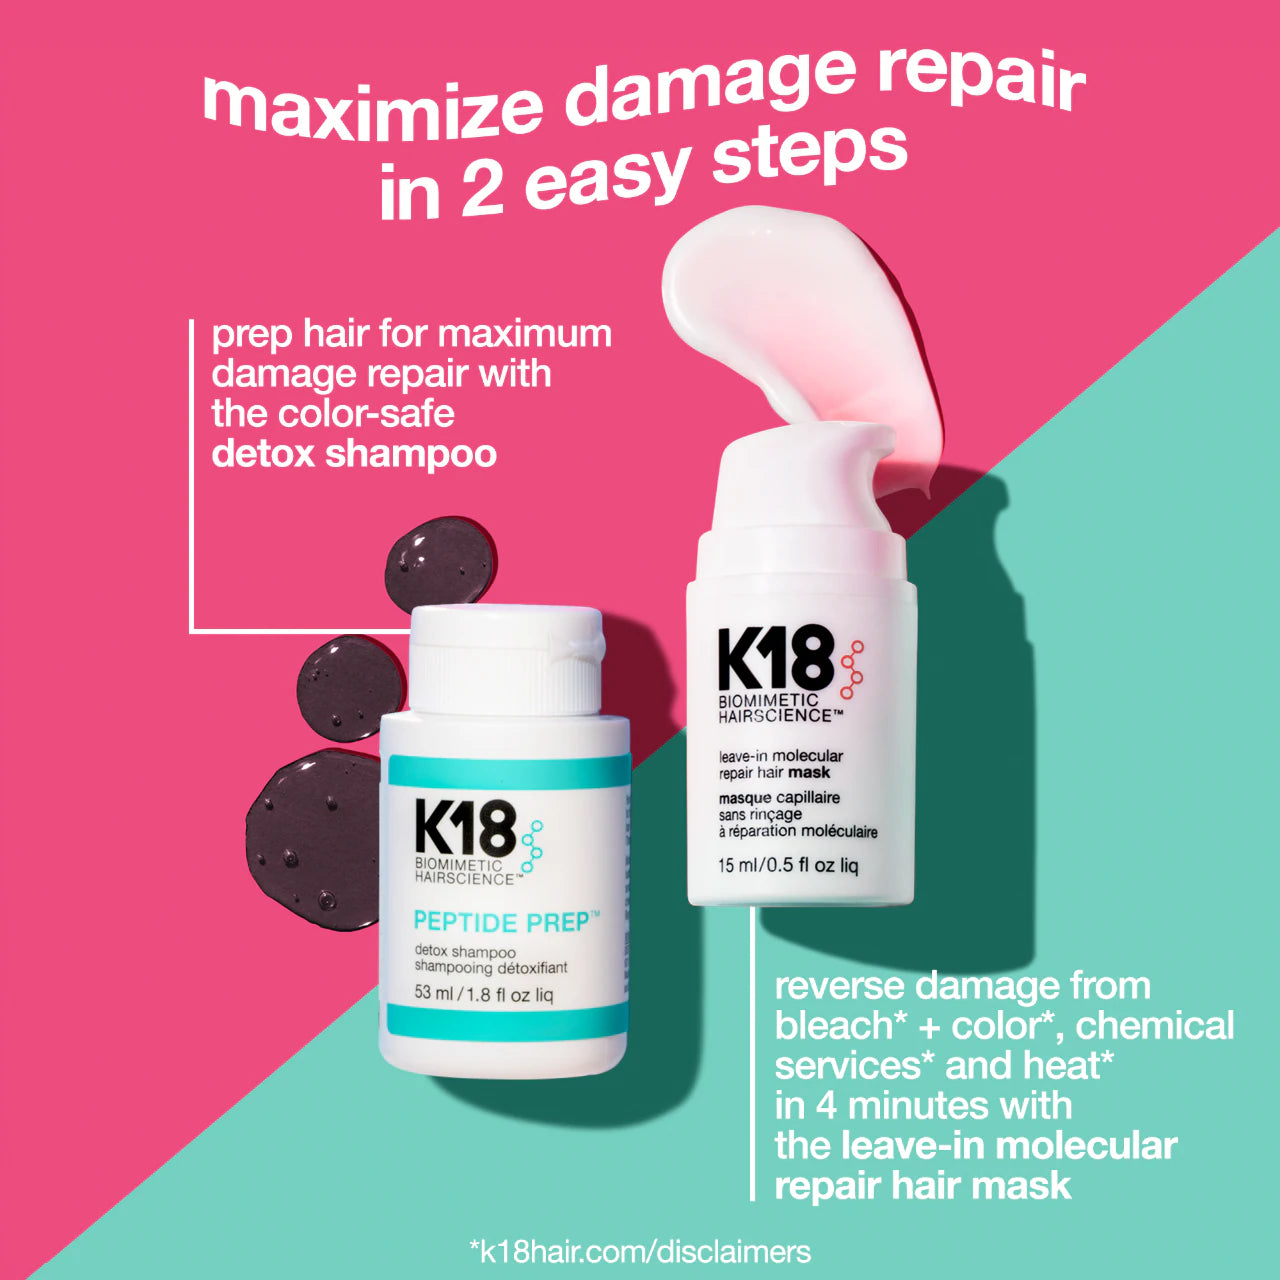 K18 Biomimetic Hairscience - Detox + Repair Anywhere Set